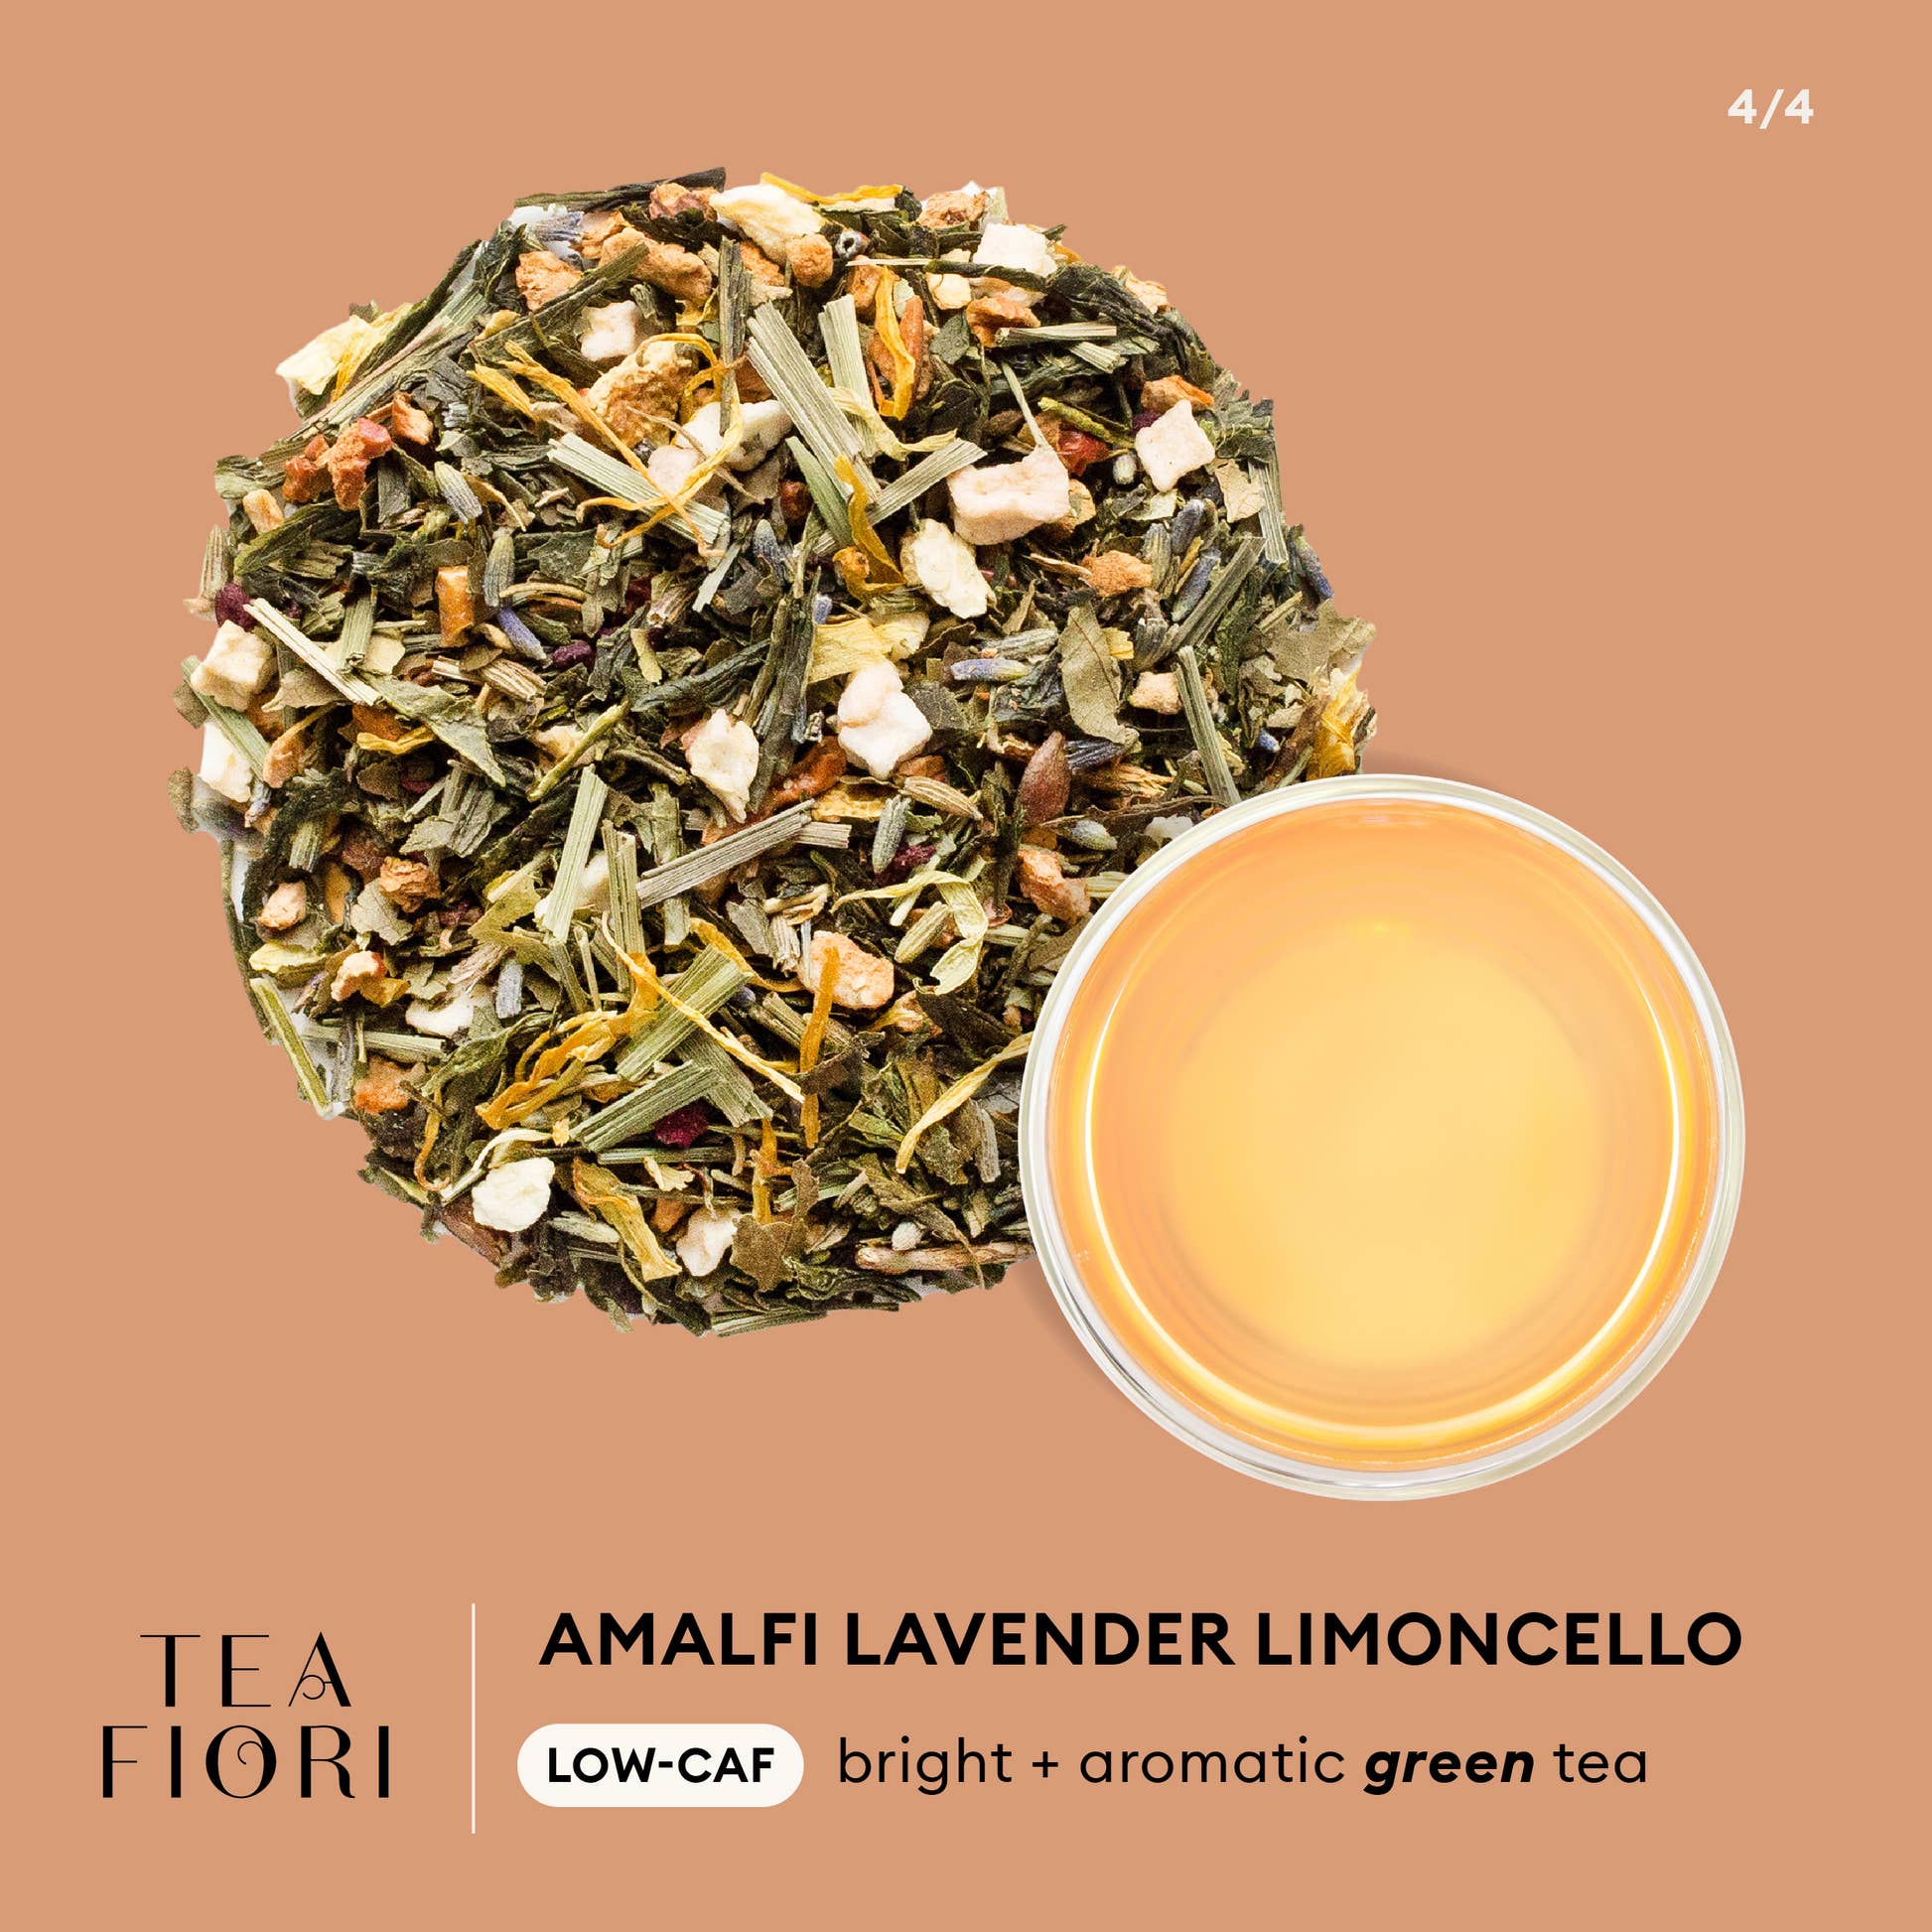 Tea Fiori - Amalfi Lavender Limoncello Infographic - LOW-CAF bright + aromatic green tea